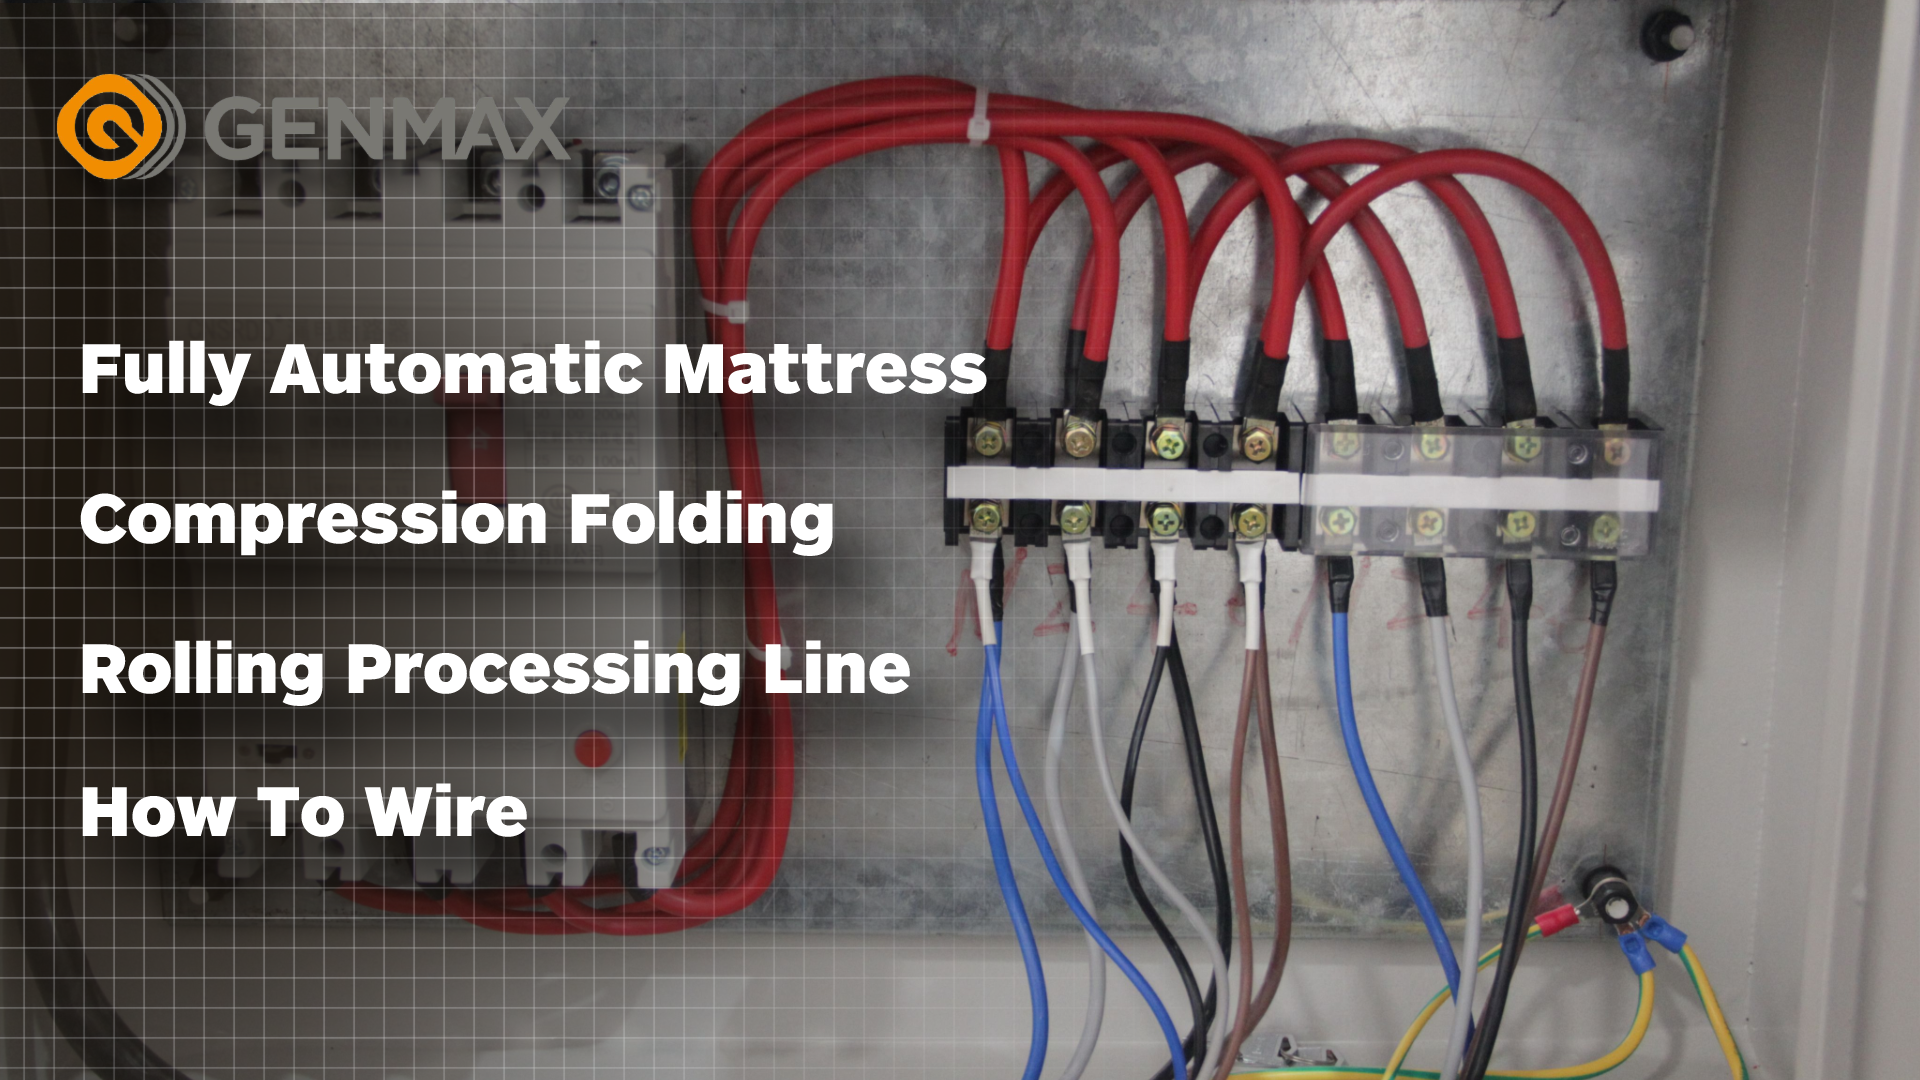 Ligne de traitement de laminage de pliage de compression de matelas entièrement automatique Comment câbler